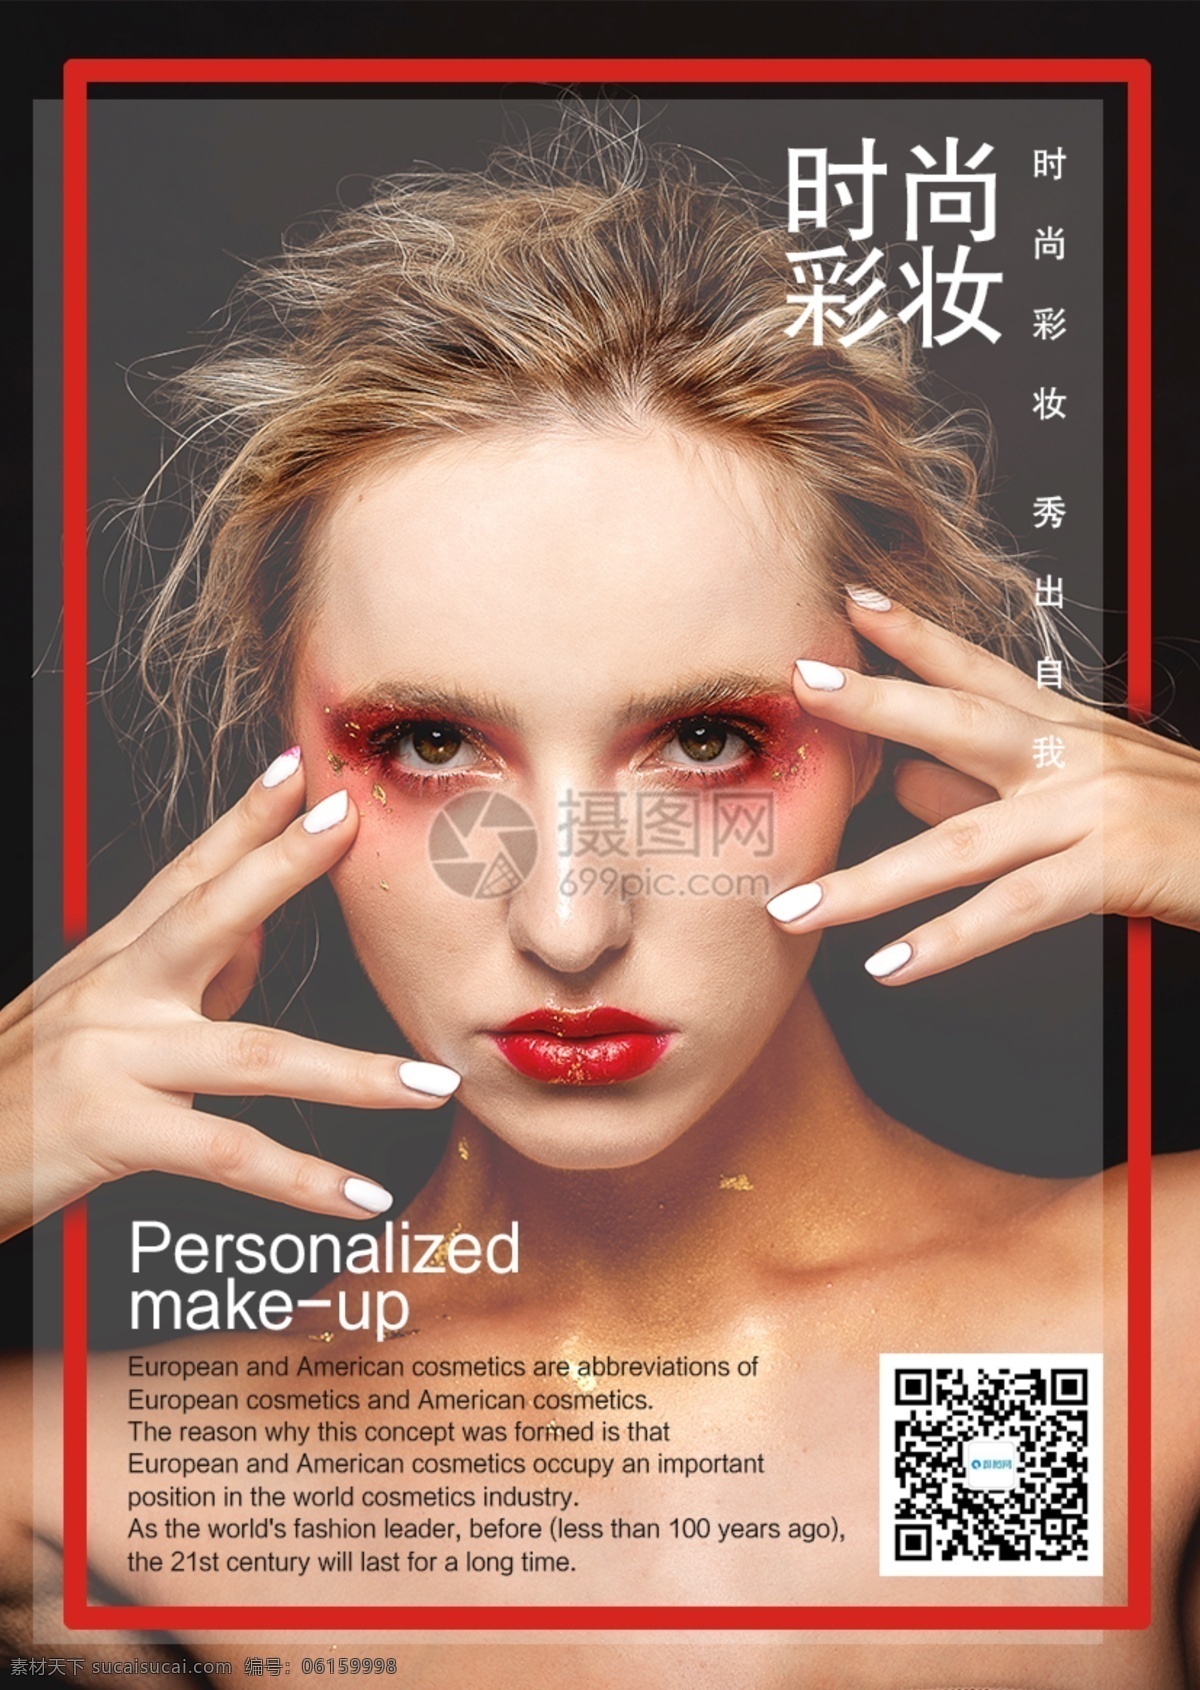 时尚彩妆海报 时尚 个性 欧美 眼妆 化妆品 口红 彩妆 护肤 时尚彩妆 海报 化妆品促销